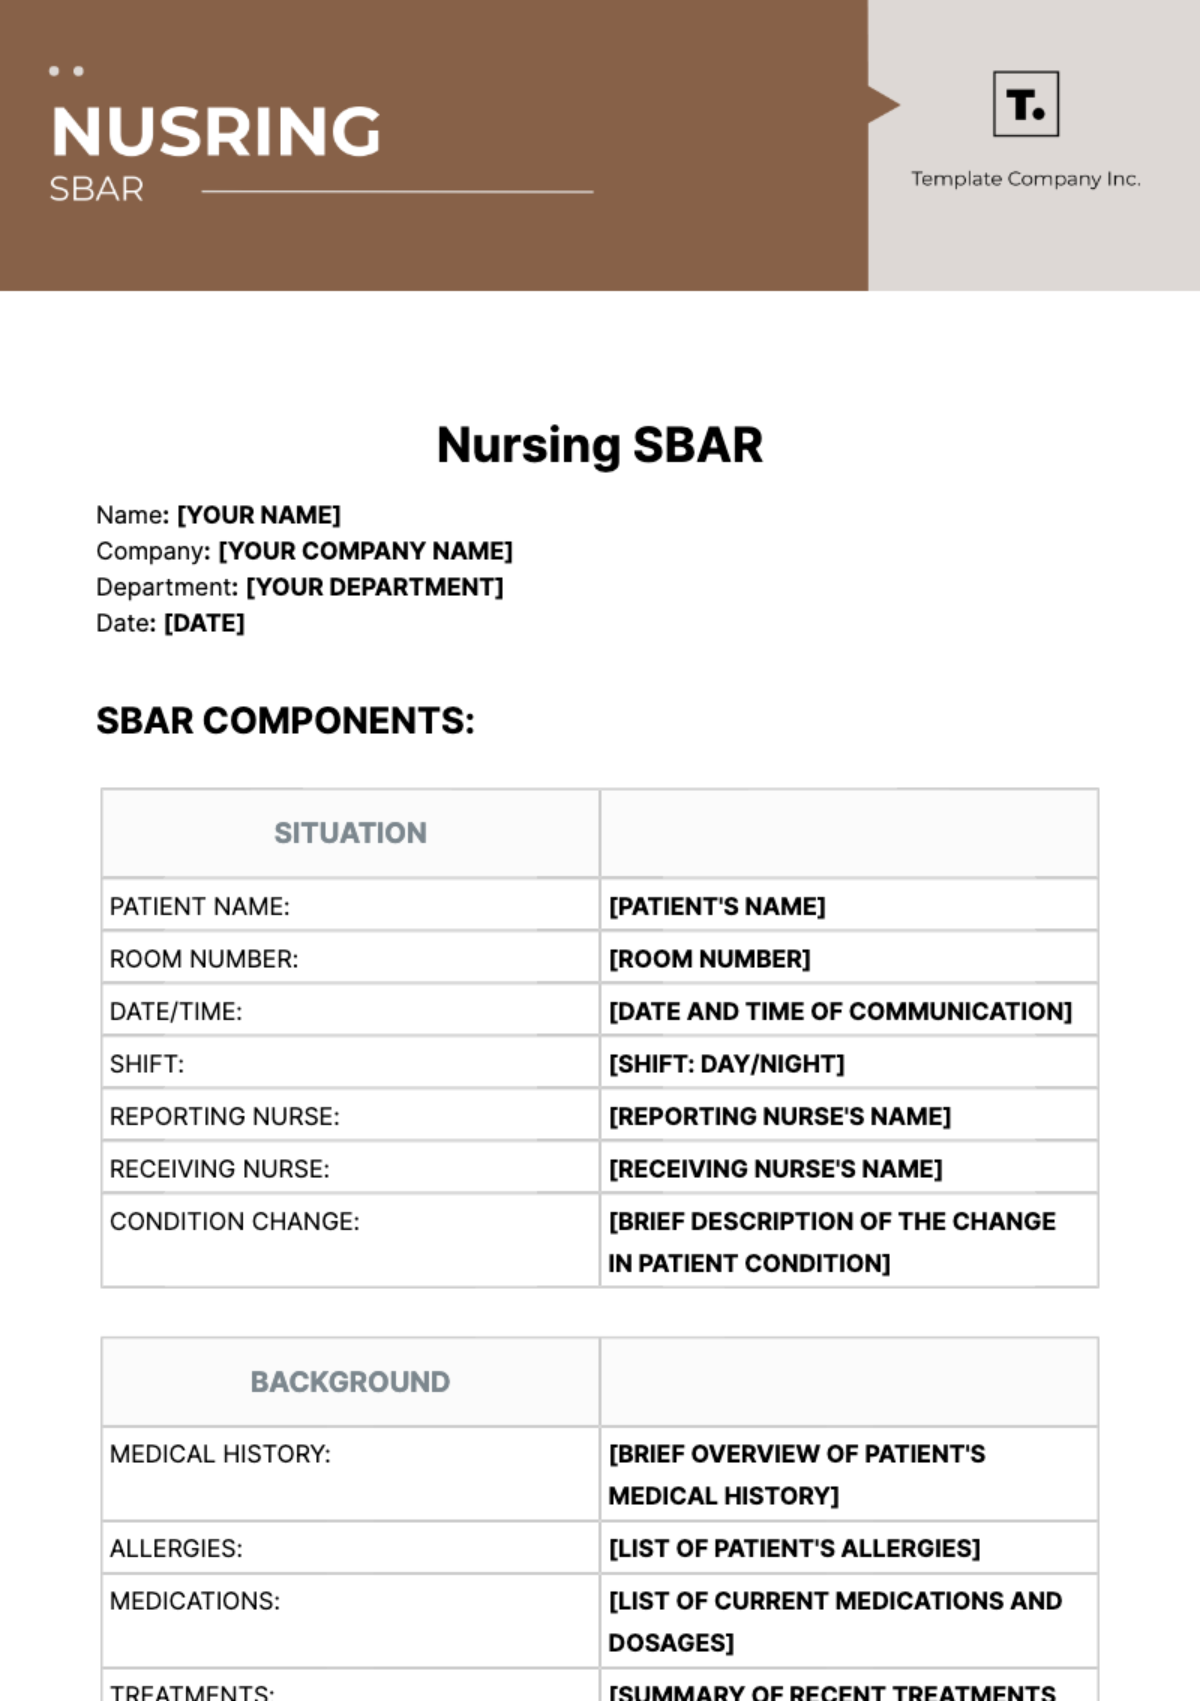 Free Nursing SBAR Template